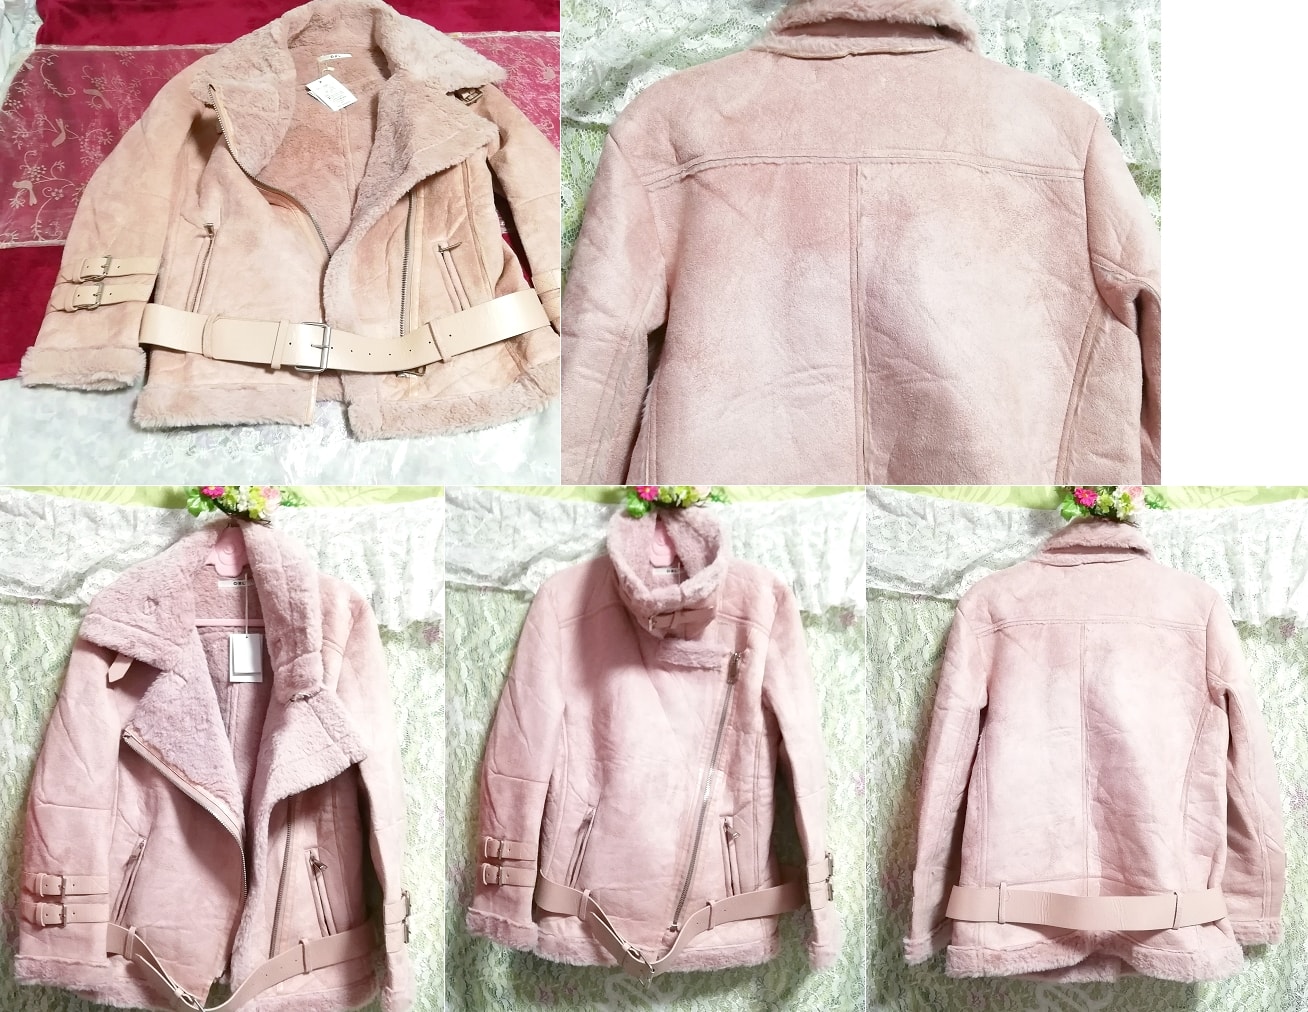 Розовое кожаное пальто с поясом и биркой, верхняя одежда, пальто, пальто в целом, размер м